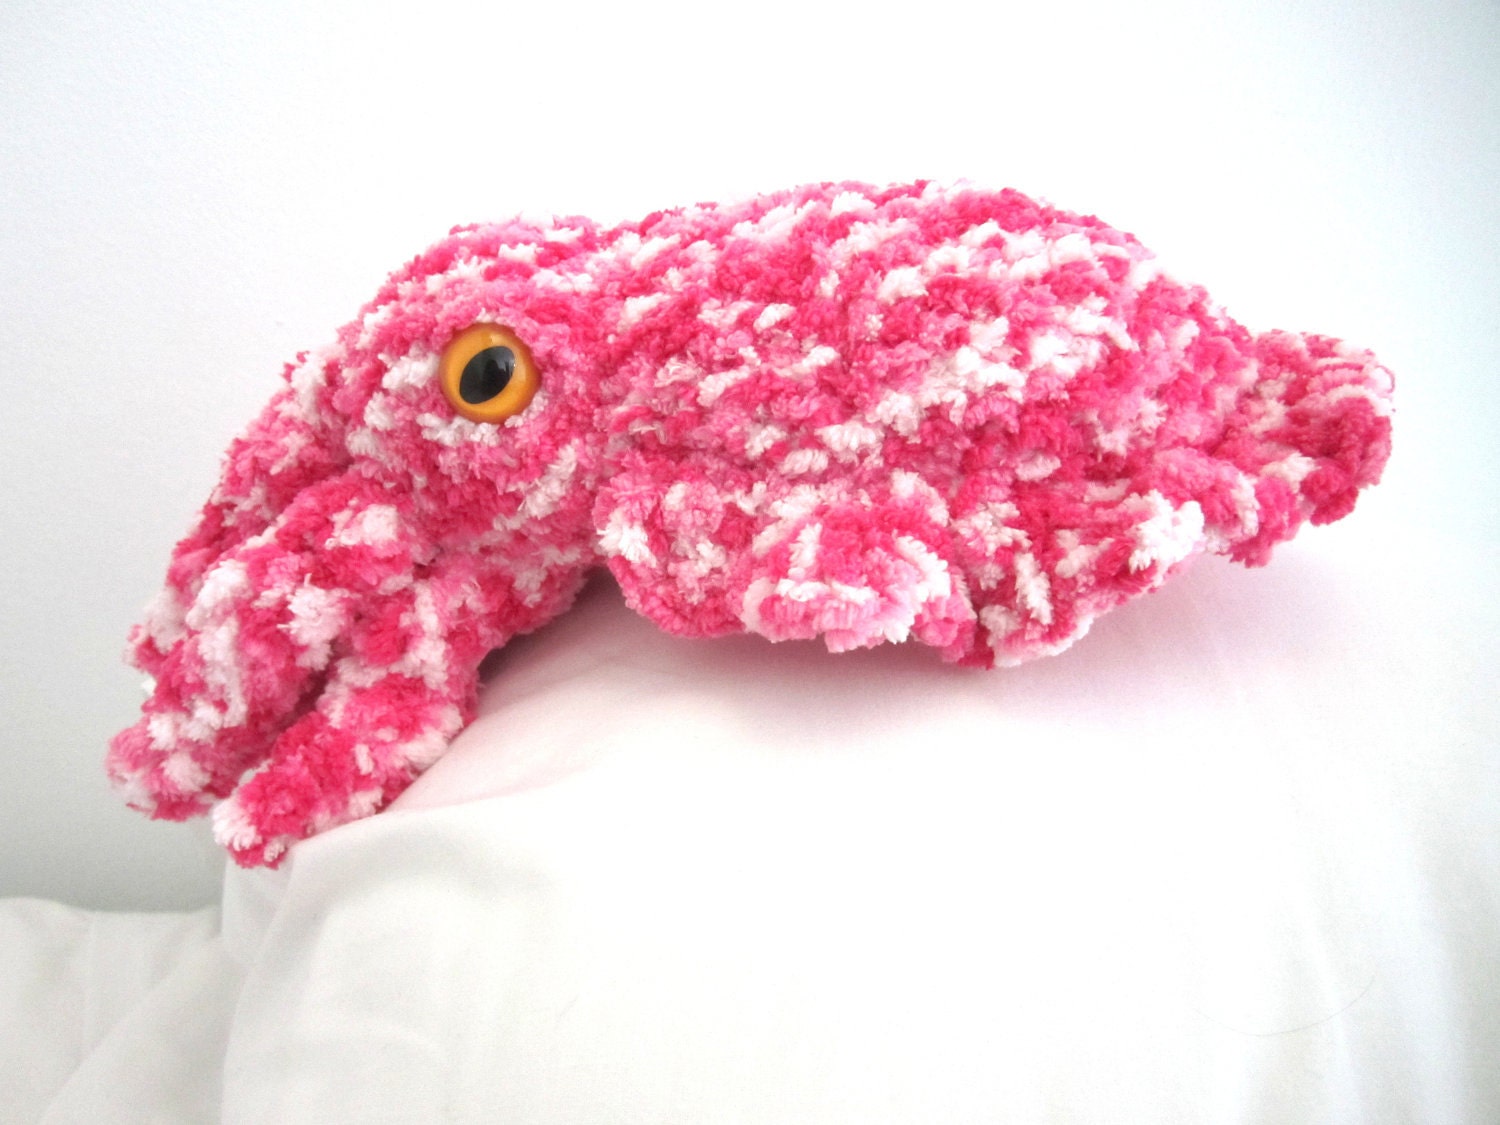 Crocheted Cuttlefish Amigurumi Pattern by CC